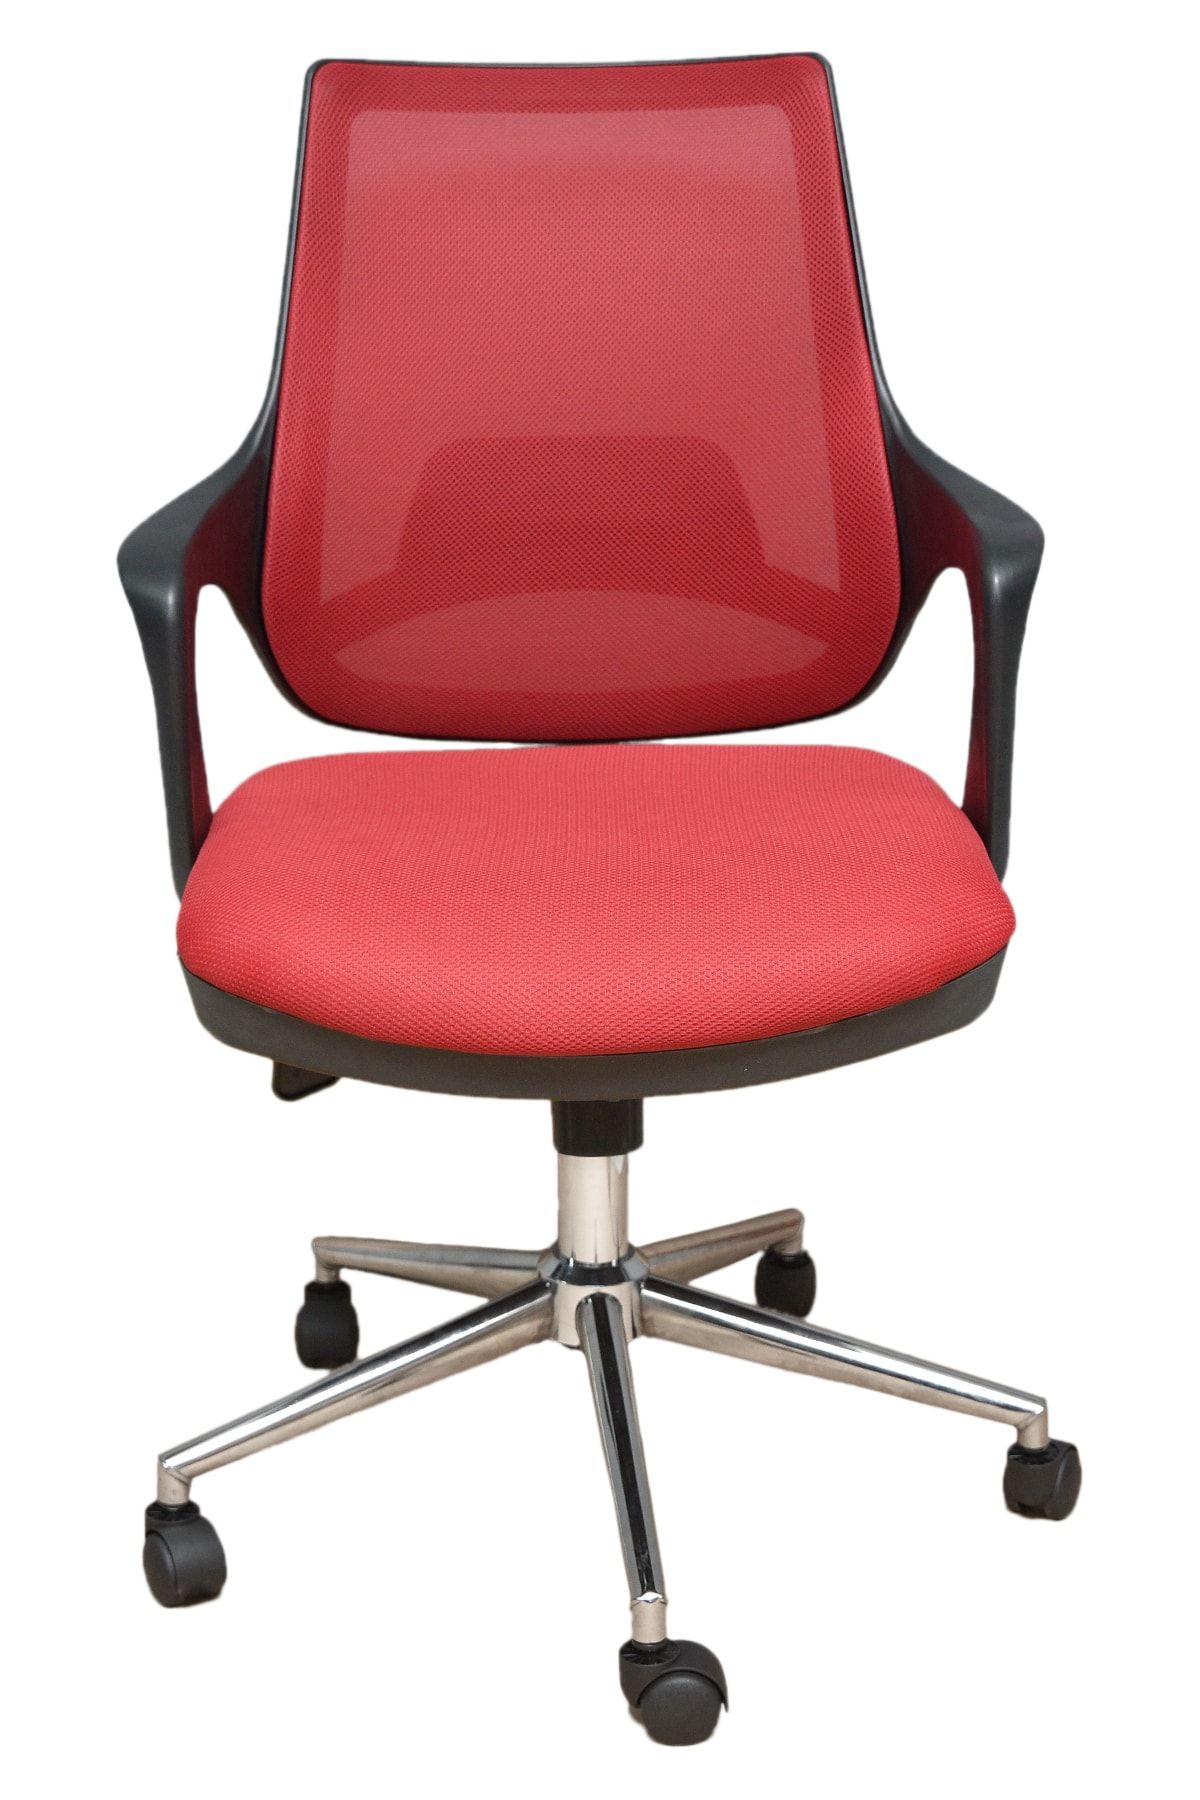 Porziyon Kontez Büro Çalışma Koltuğu Öğrenci Sandalyesi Krom Ayak Renk Kırmızı